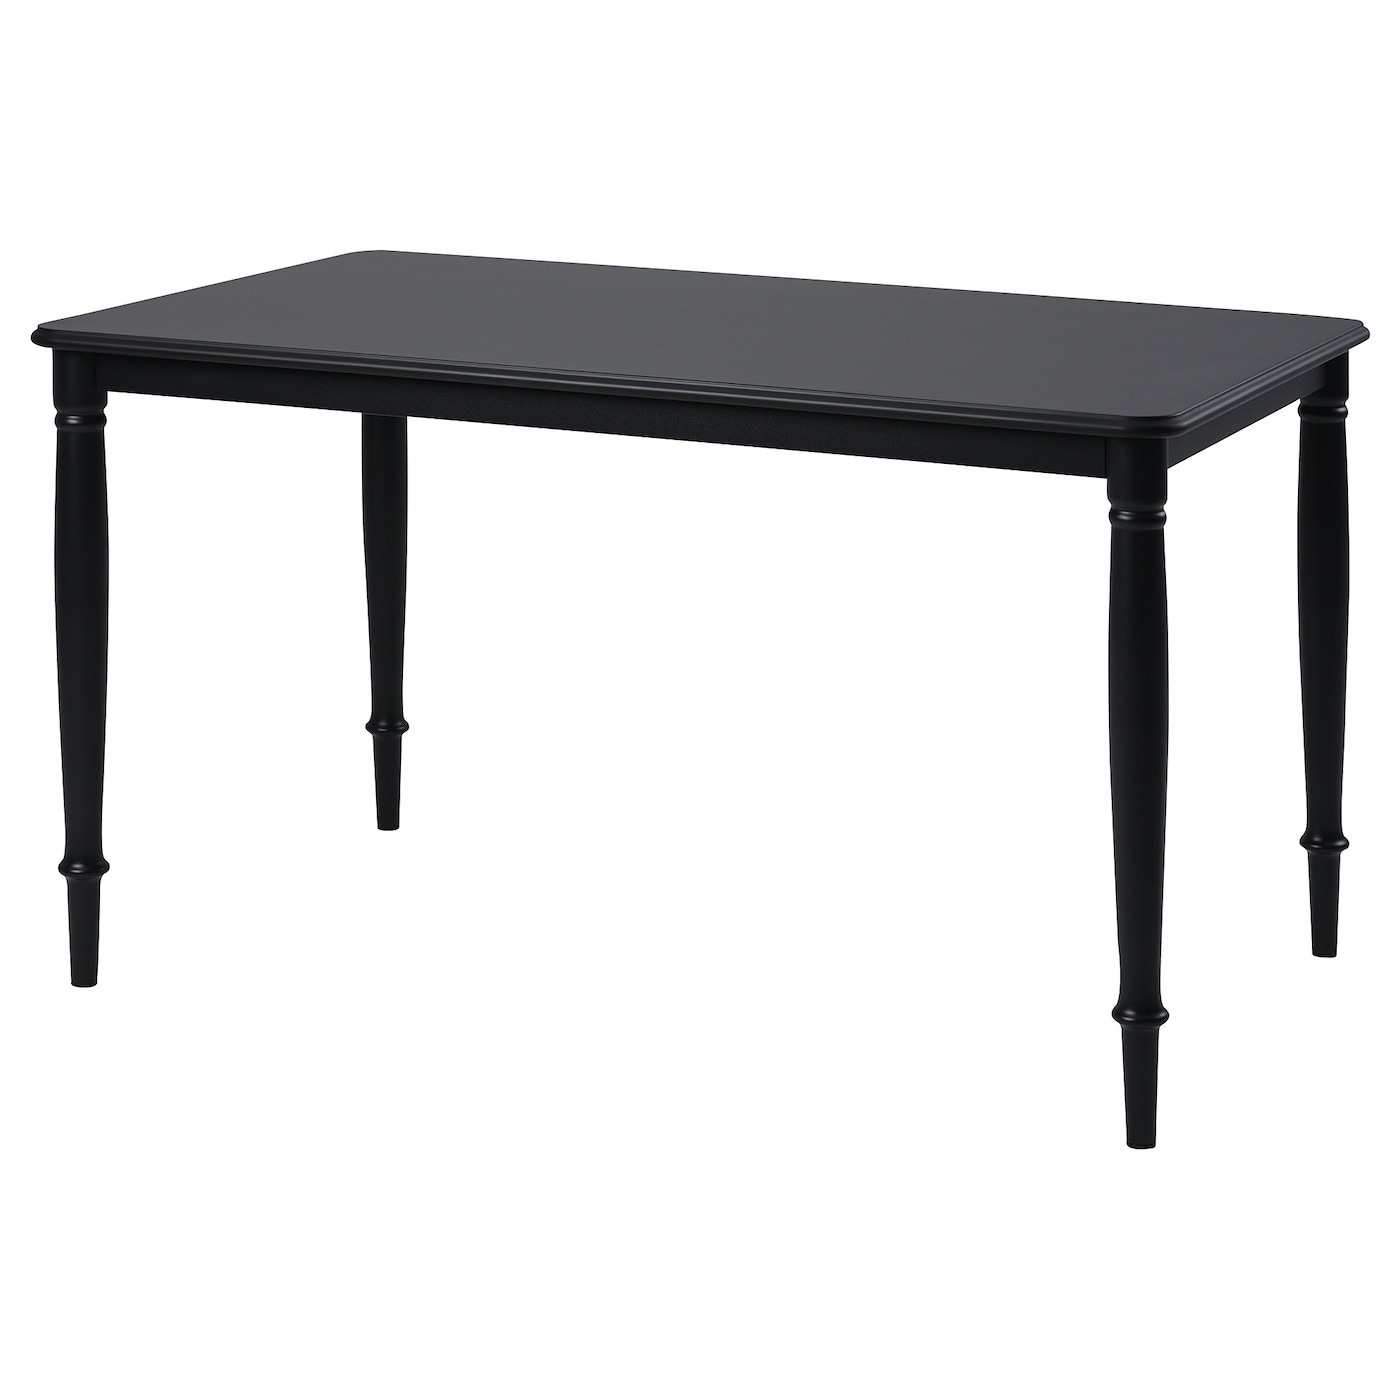 DANDERYD обеденный стол ИКЕА 130х80 см, черный